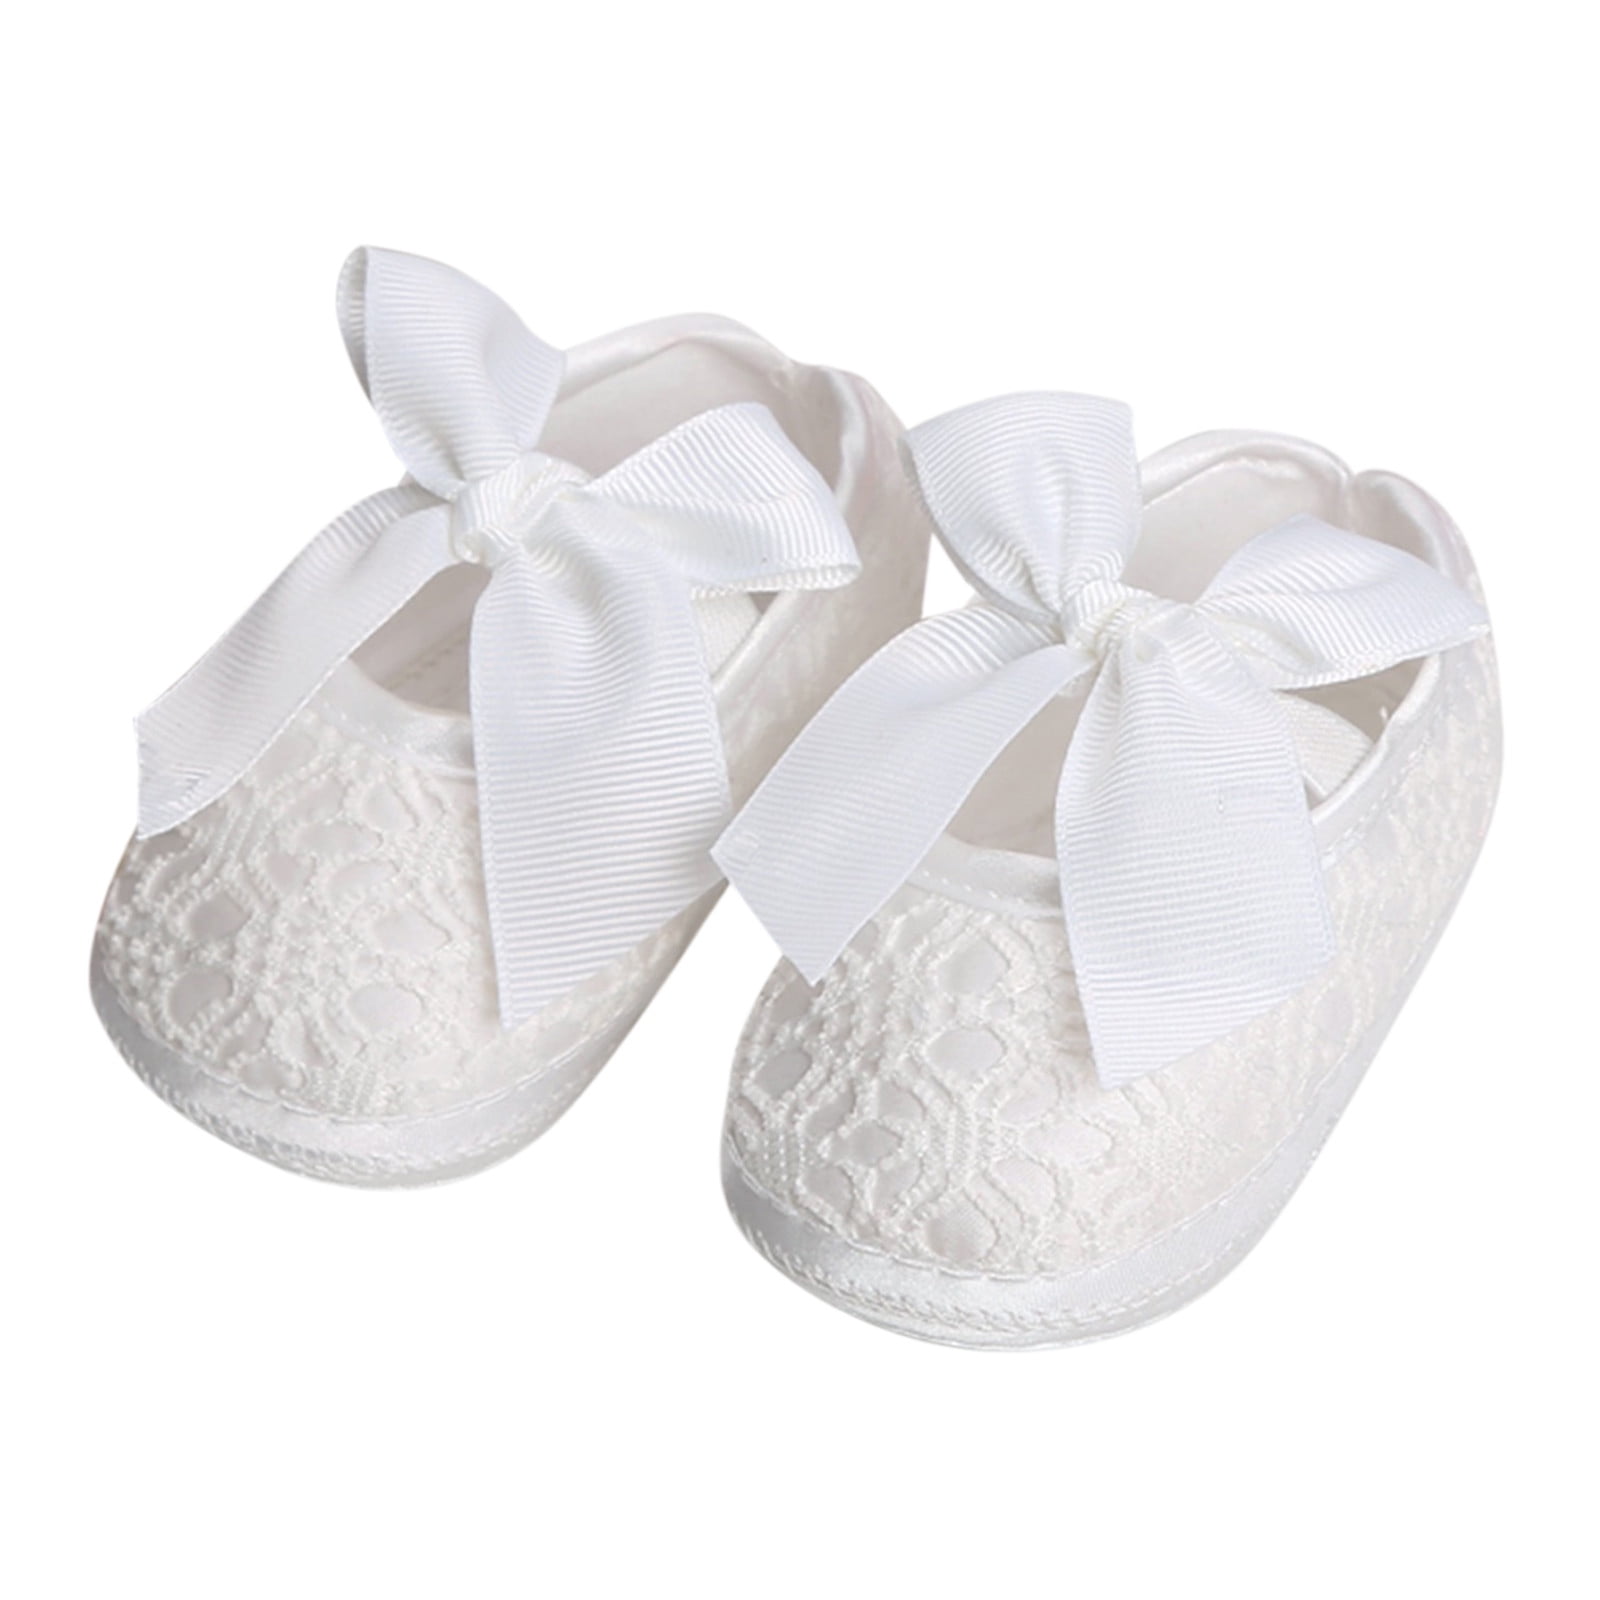 Celiean Children Infant Toddler Shoes Spring And Summer Girls Floor ...